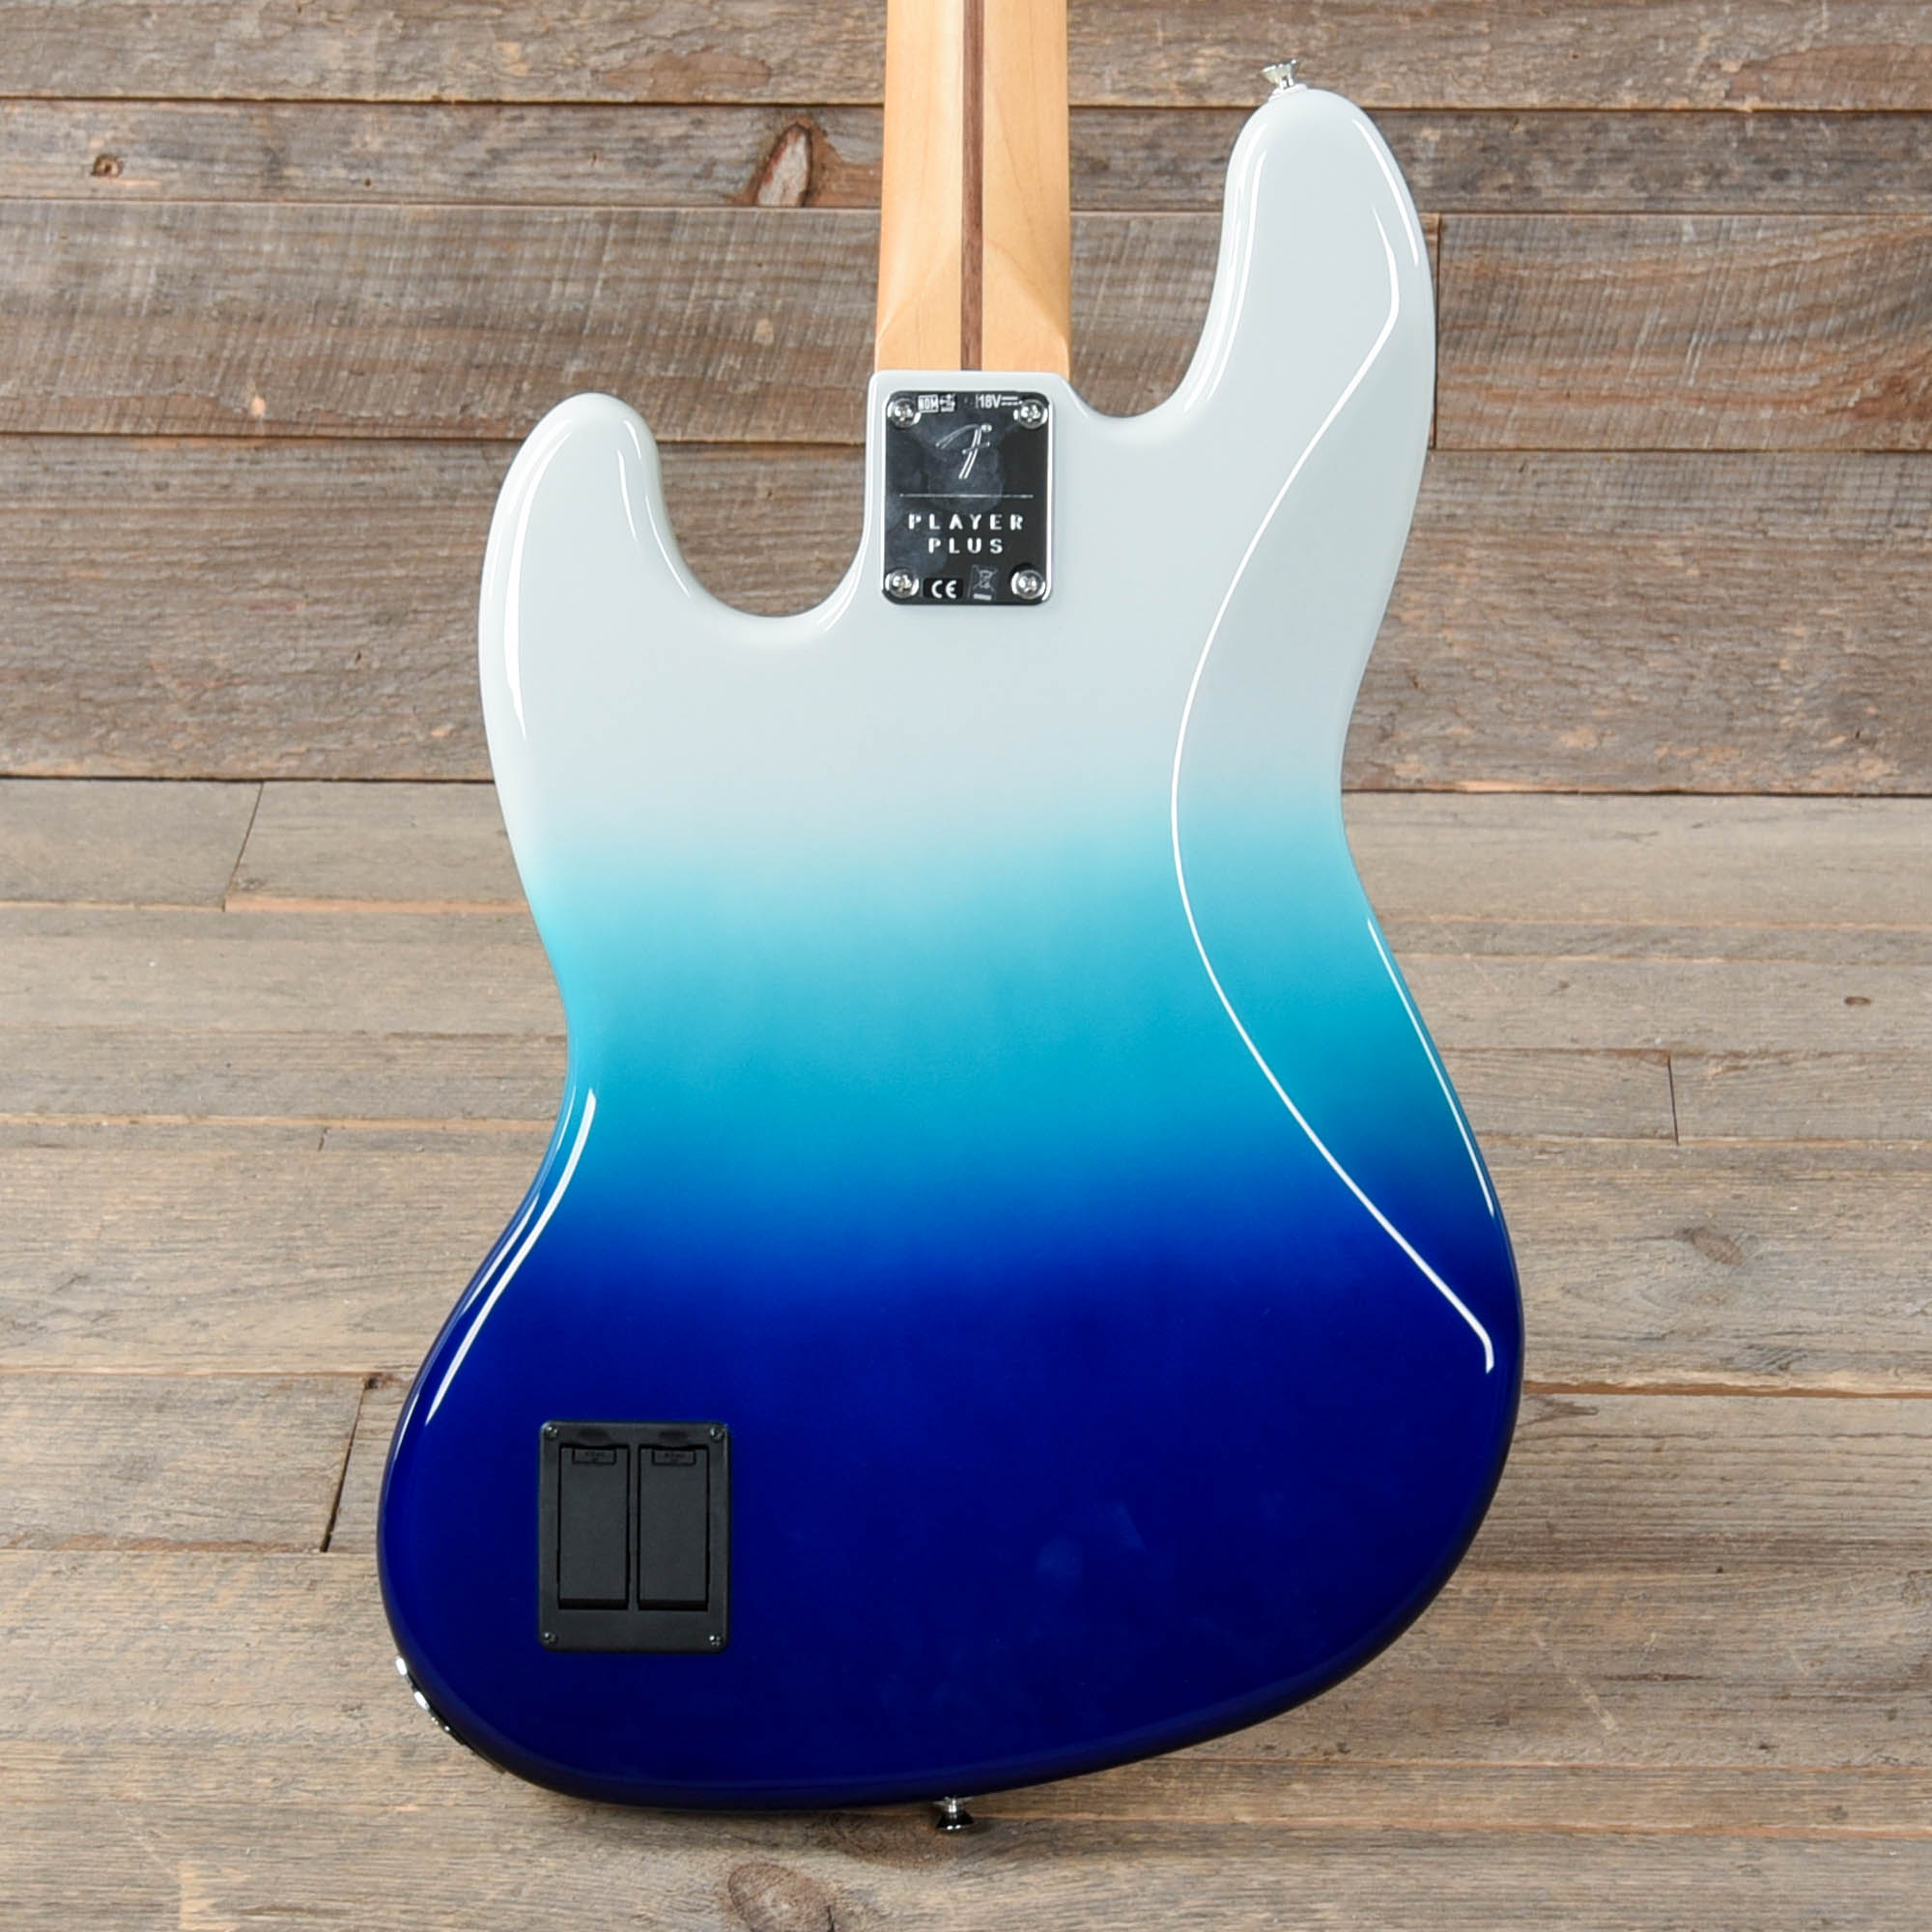 Fender Player Plus Active Jazz Bass Bel Air Blue Bass Guitars / 4-String